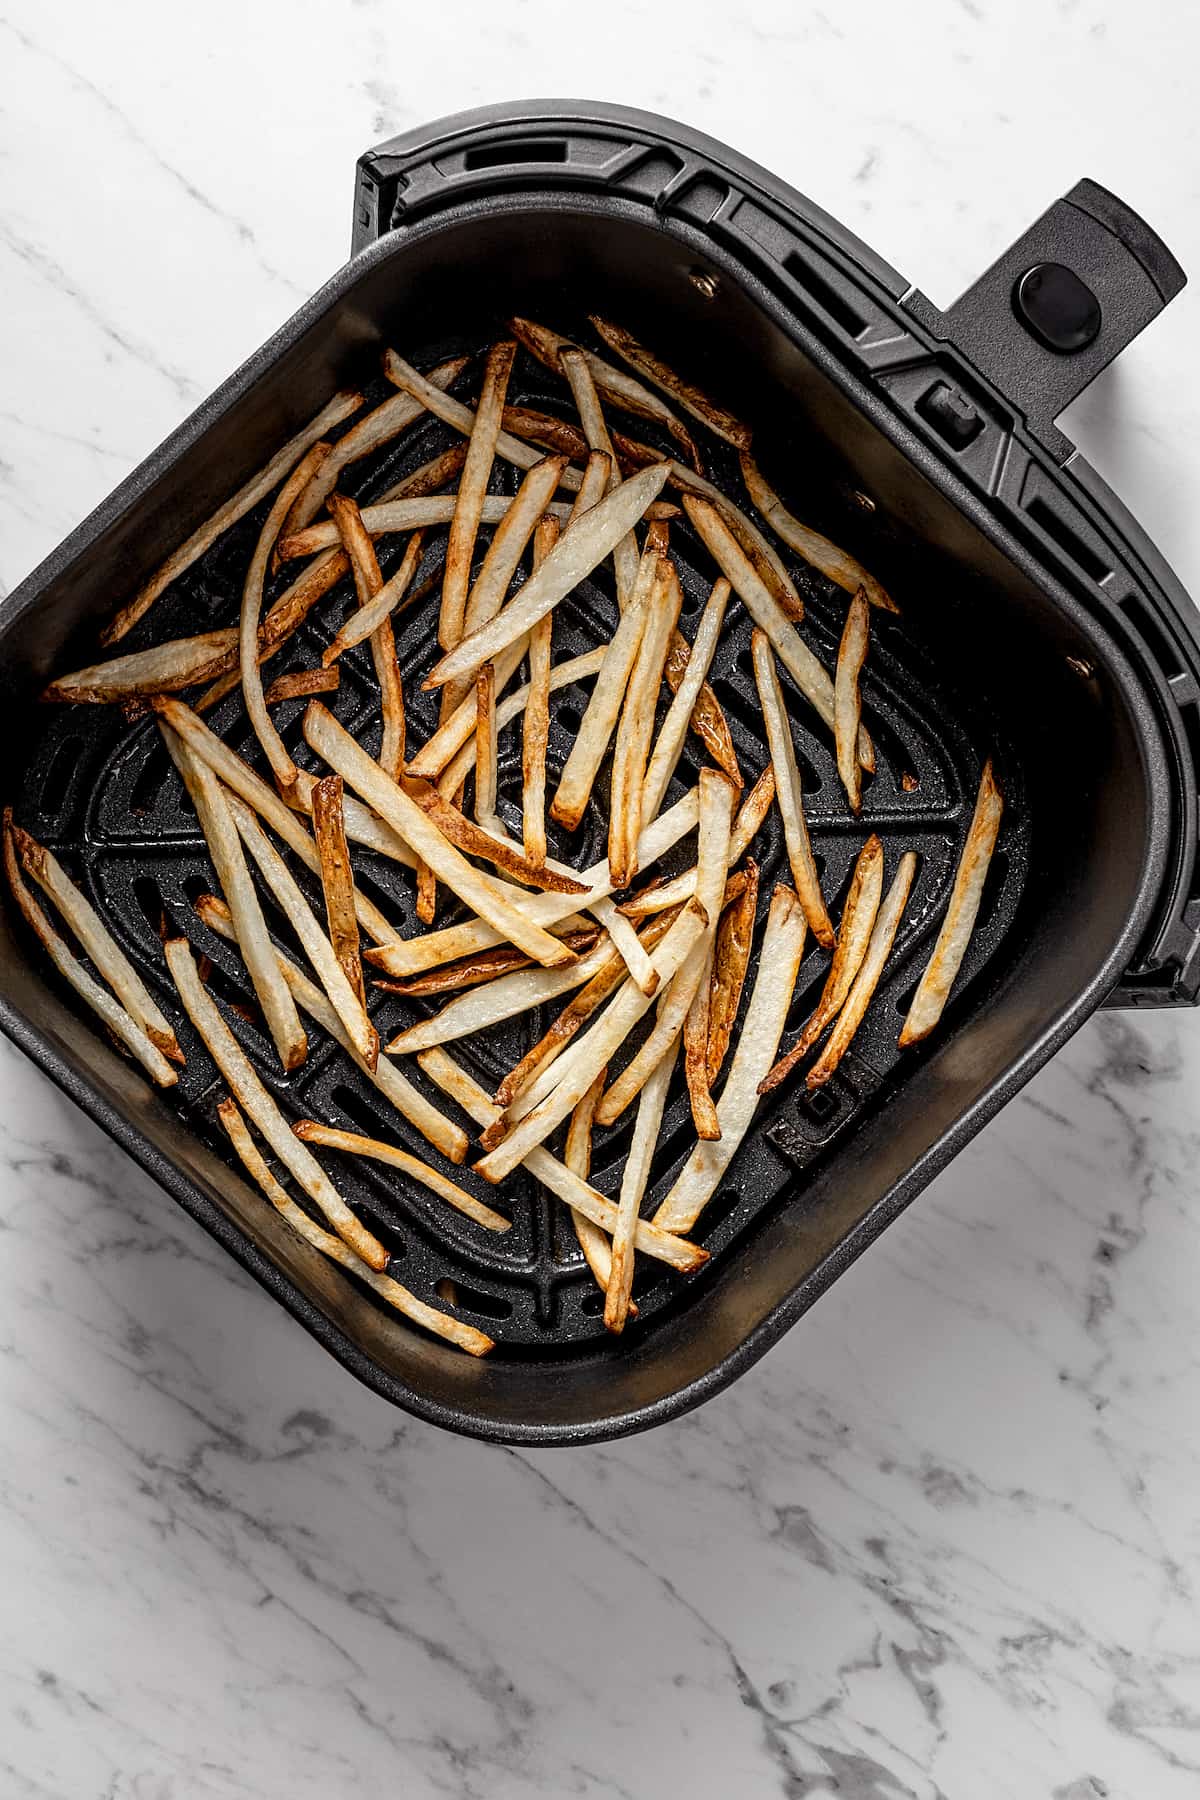 Overhead view of fries in air fryer basket